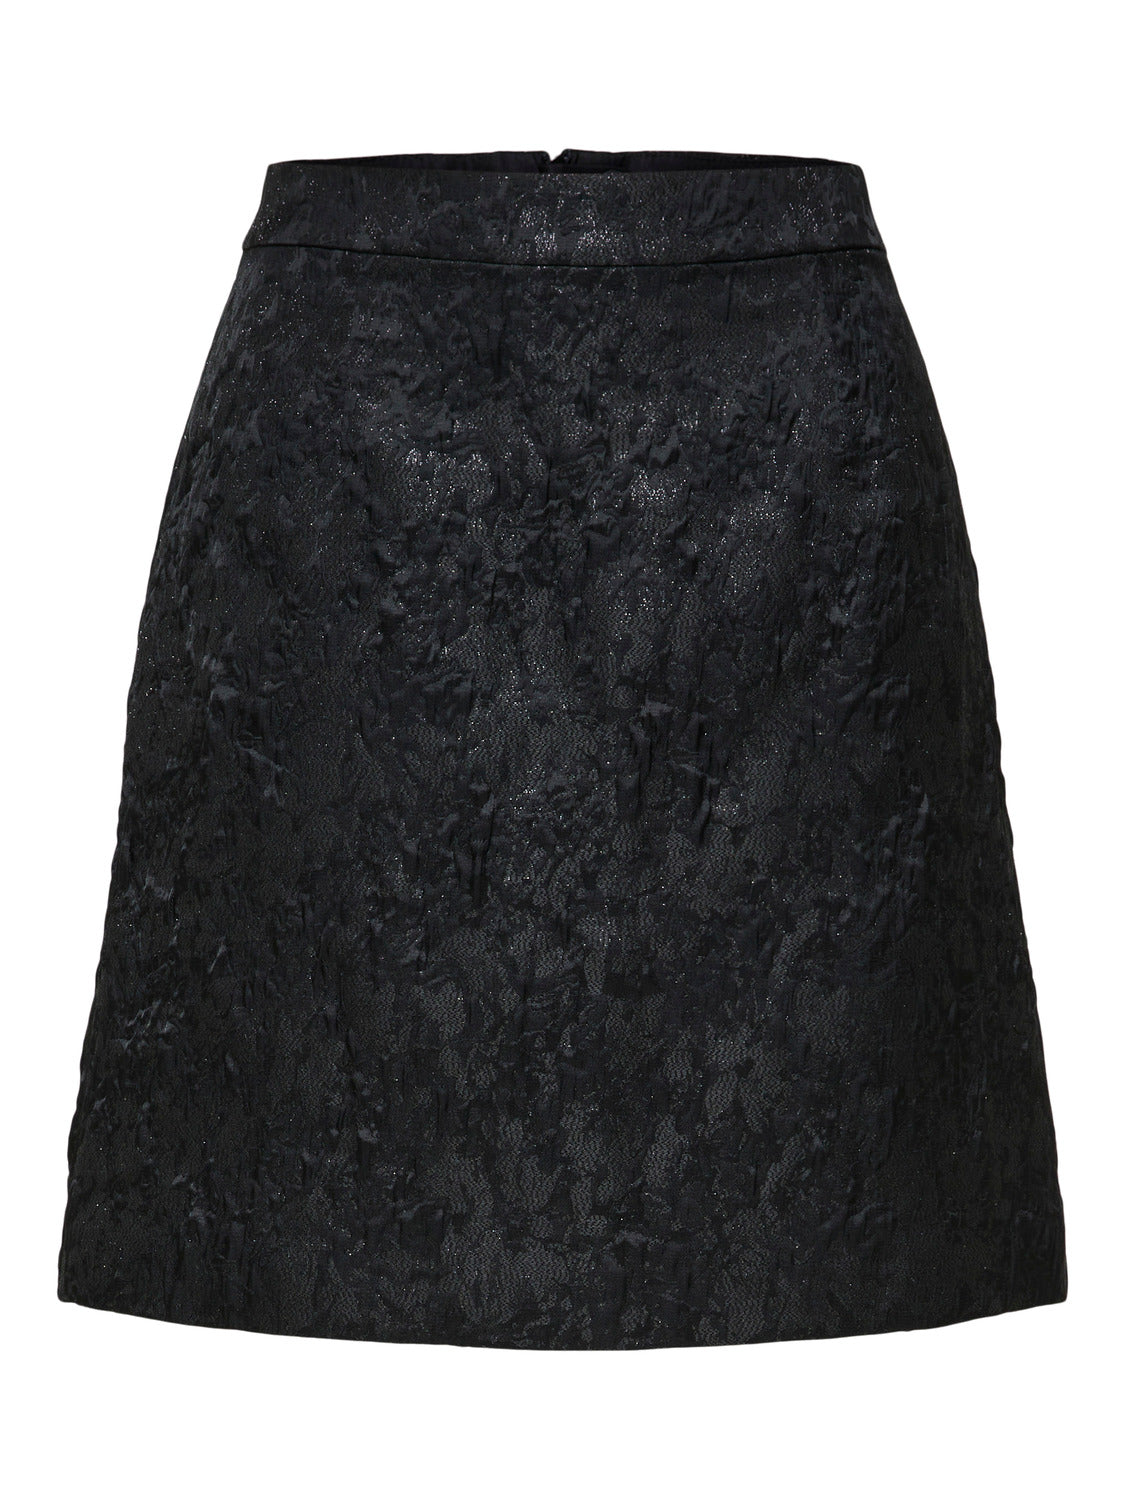 SLFYDDA Skirt - Black